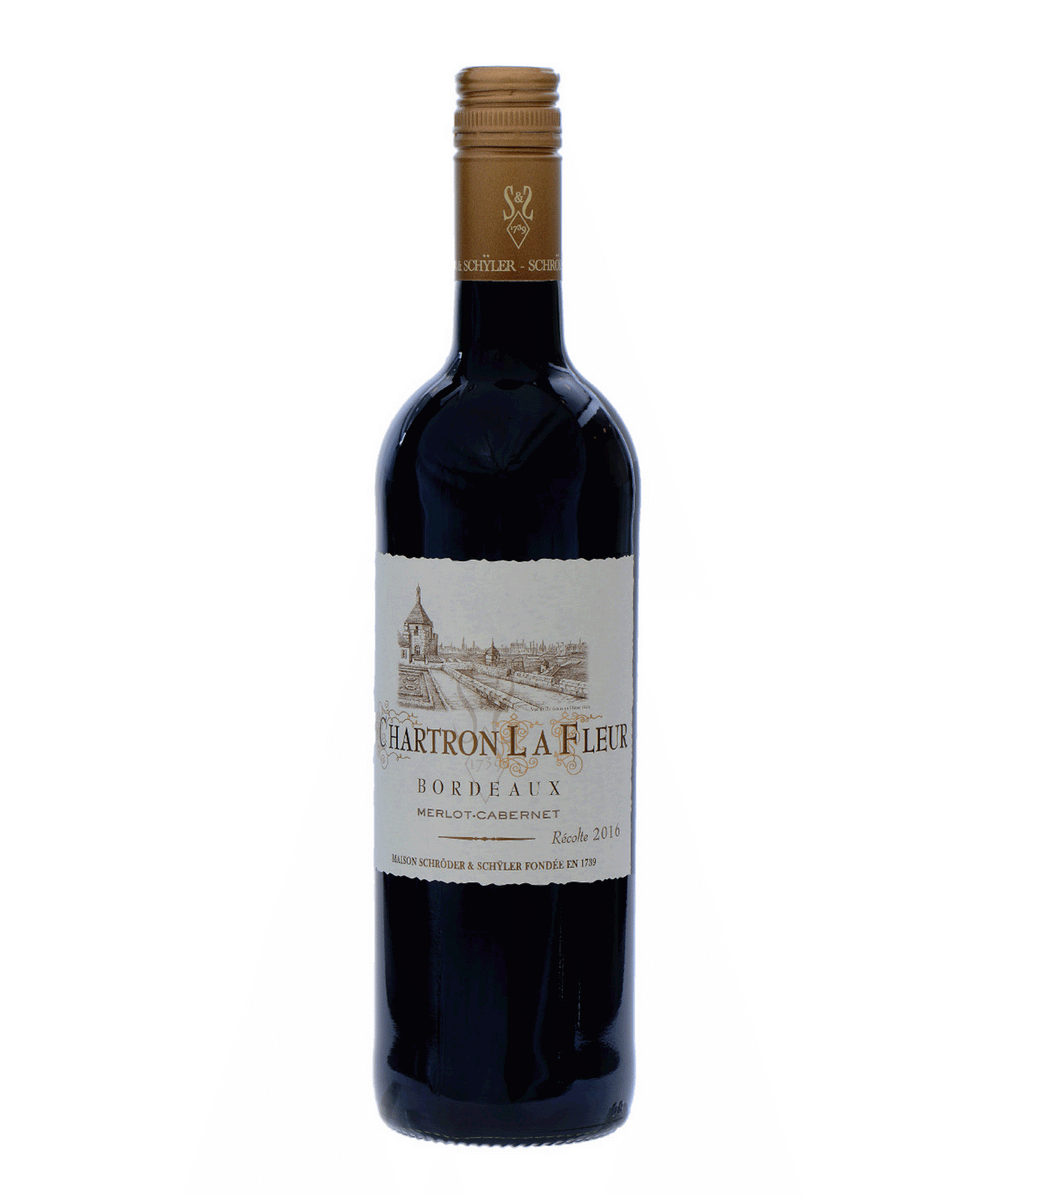 Chartron La Fleur Bordeaux 2016